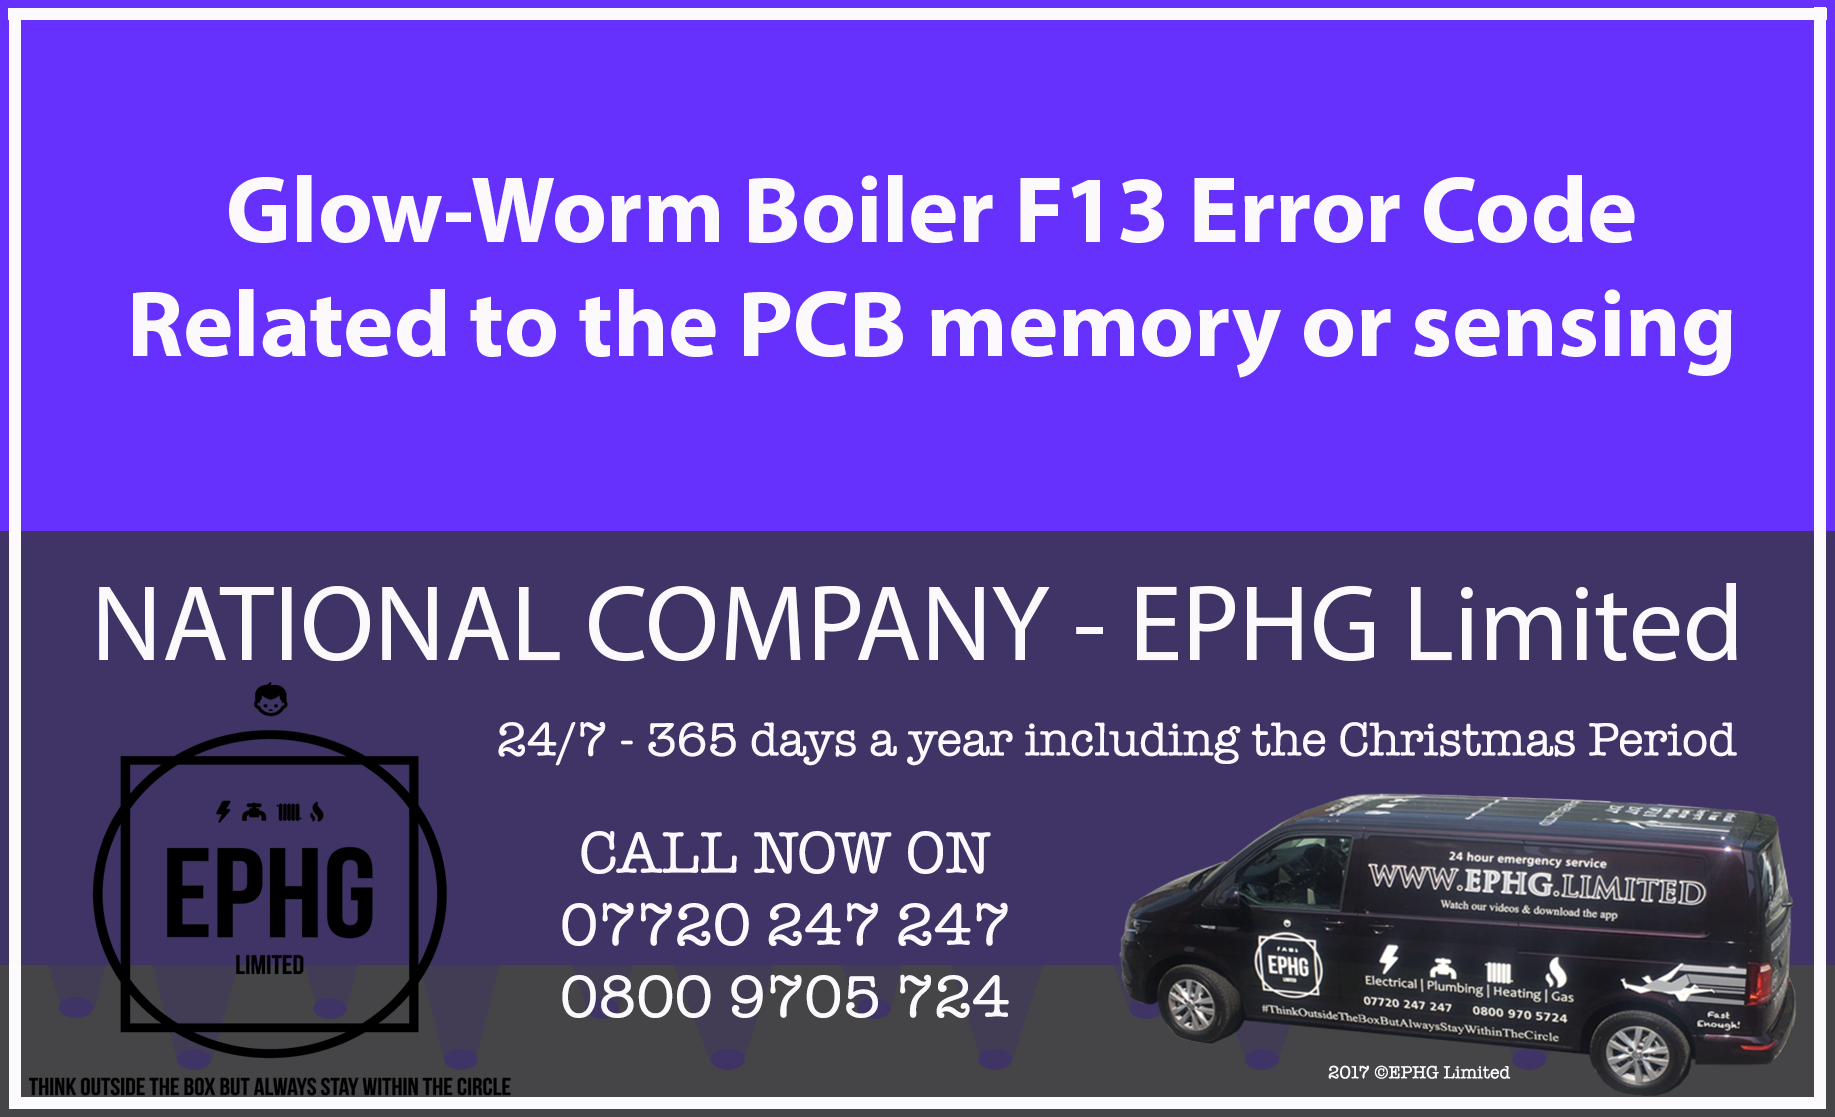 Glow-Worm boiler error code F13